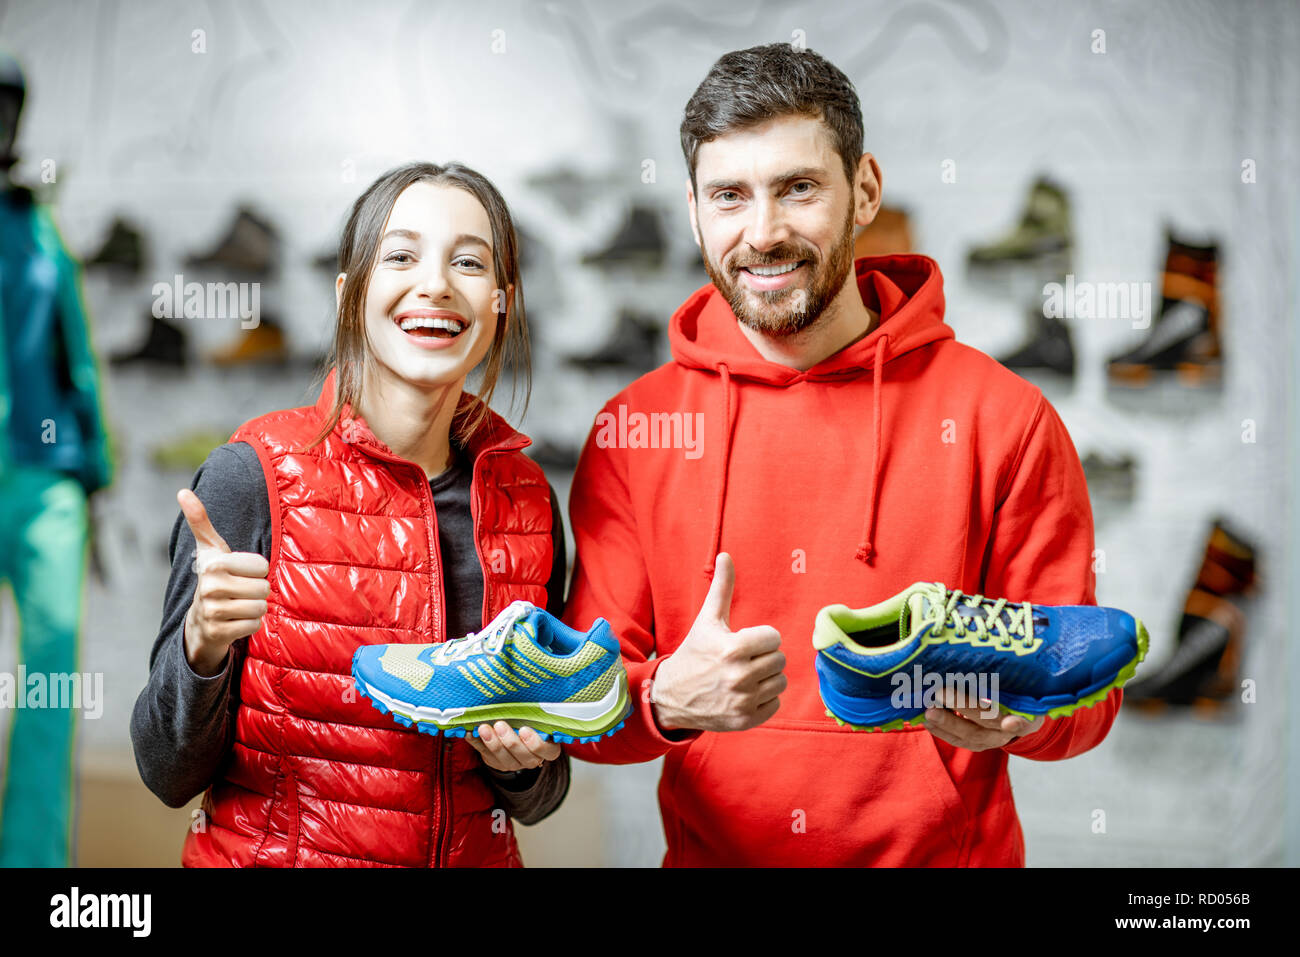 Portrait of a smiling man and woman standing avec chaussures de randonnée dans le magasin de sport moderne Banque D'Images